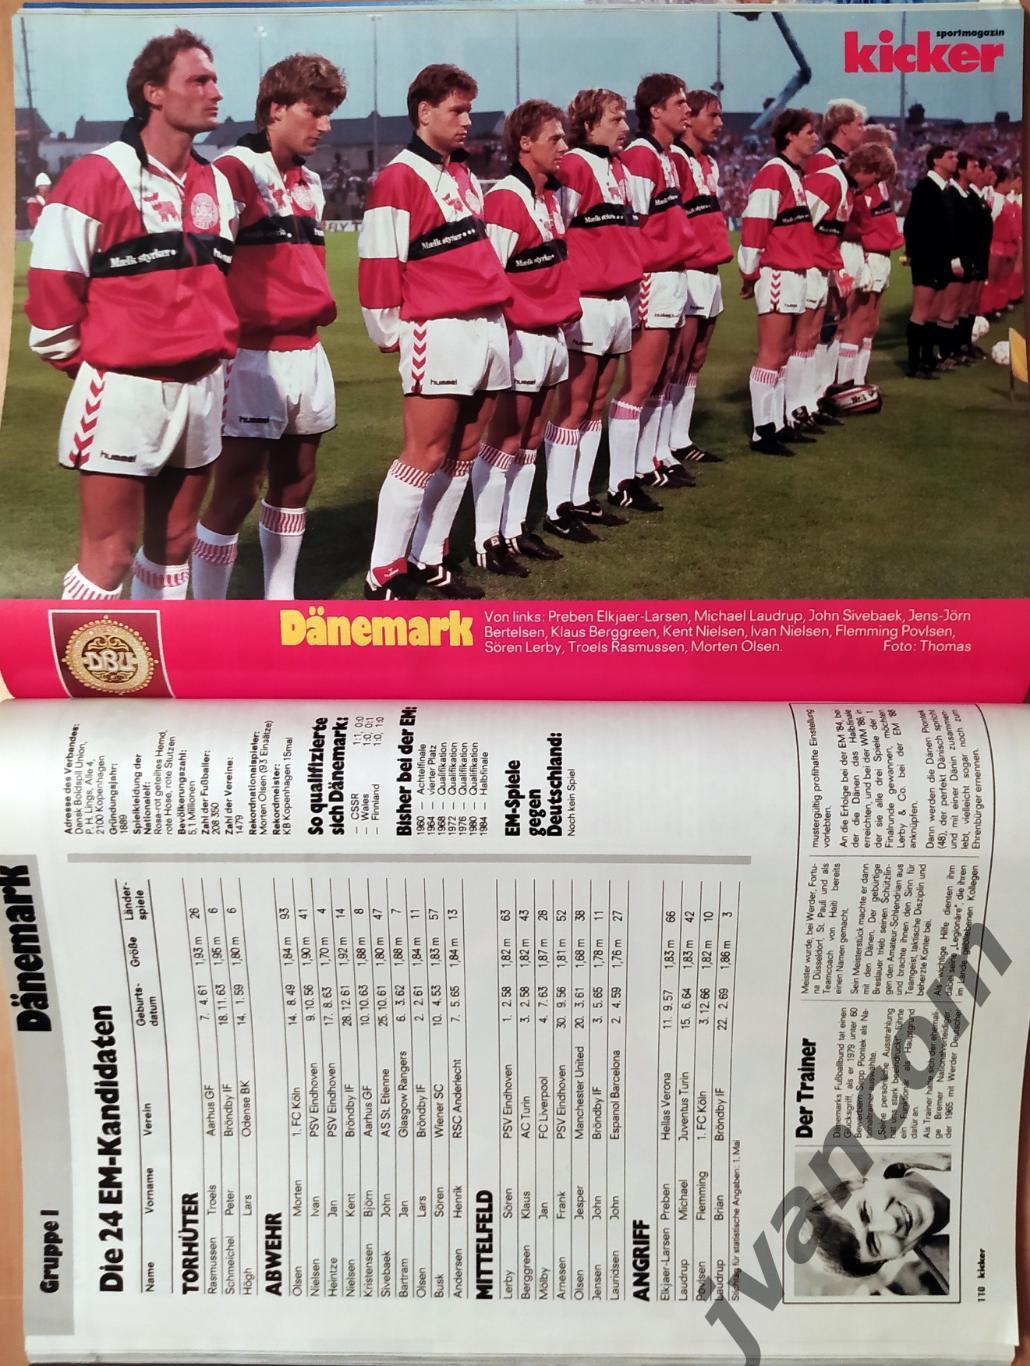 KICKER SONDERHEFT. Чемпионат Европы по футболу 1988 года. Превью участников. 6